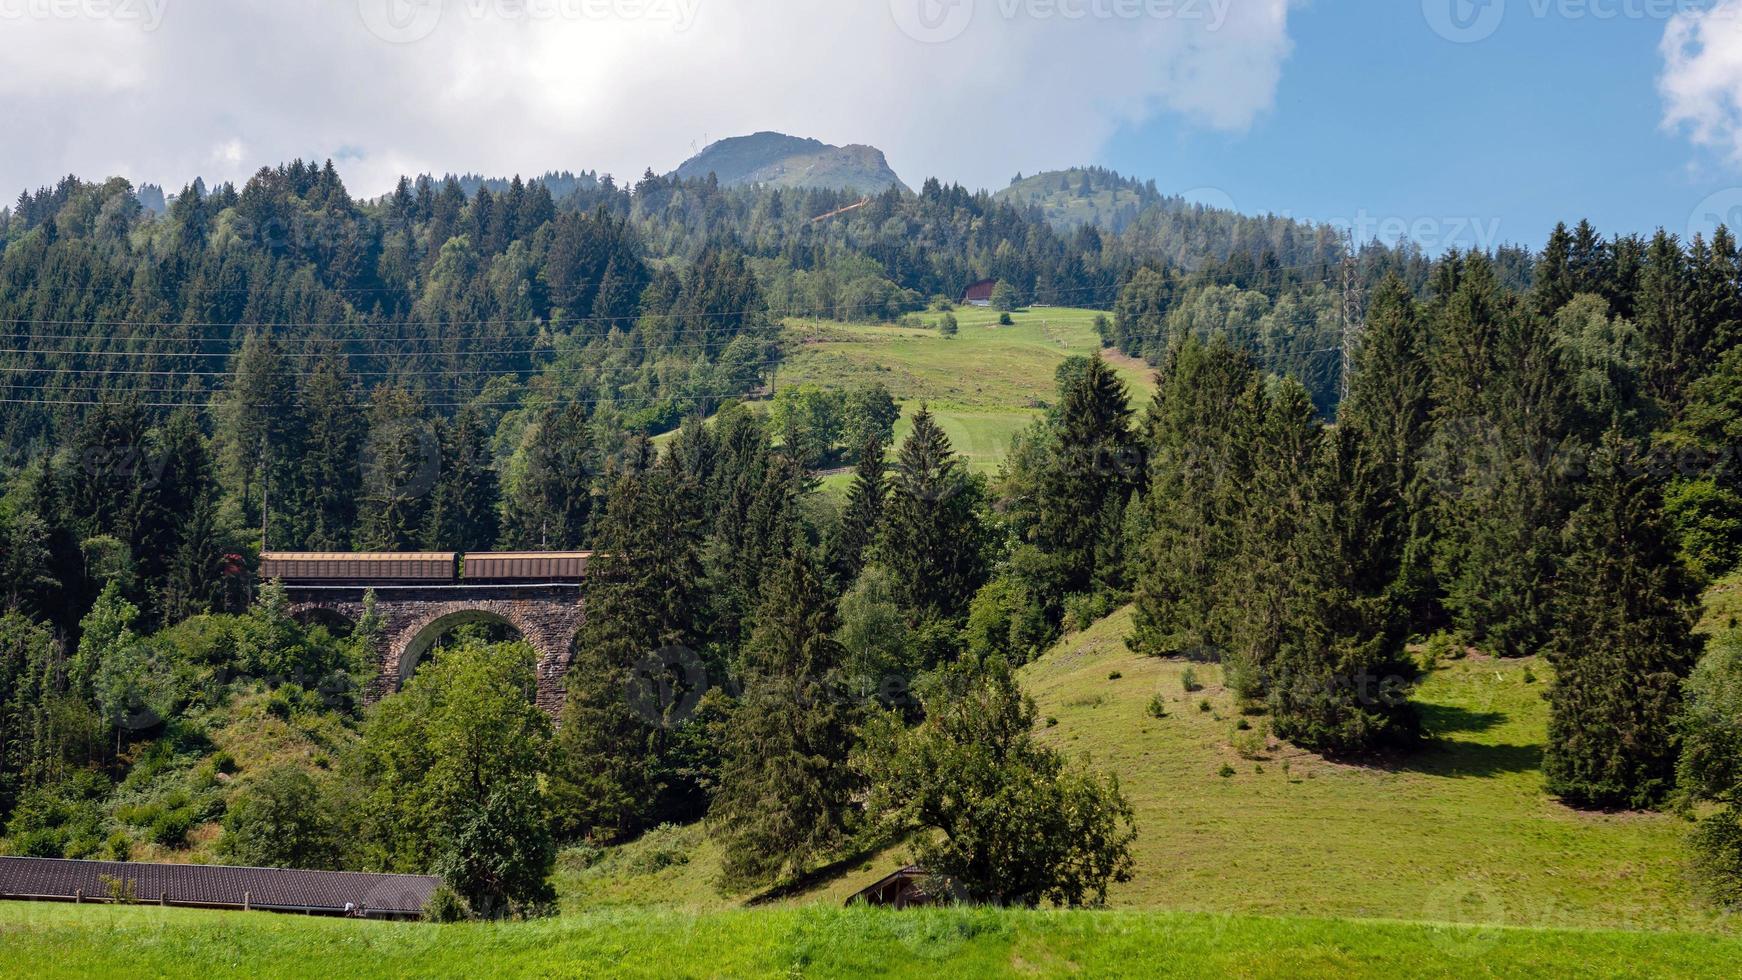 un paysage alpin pittoresque avec un vieux pont de chemin de fer. L'Autriche. photo